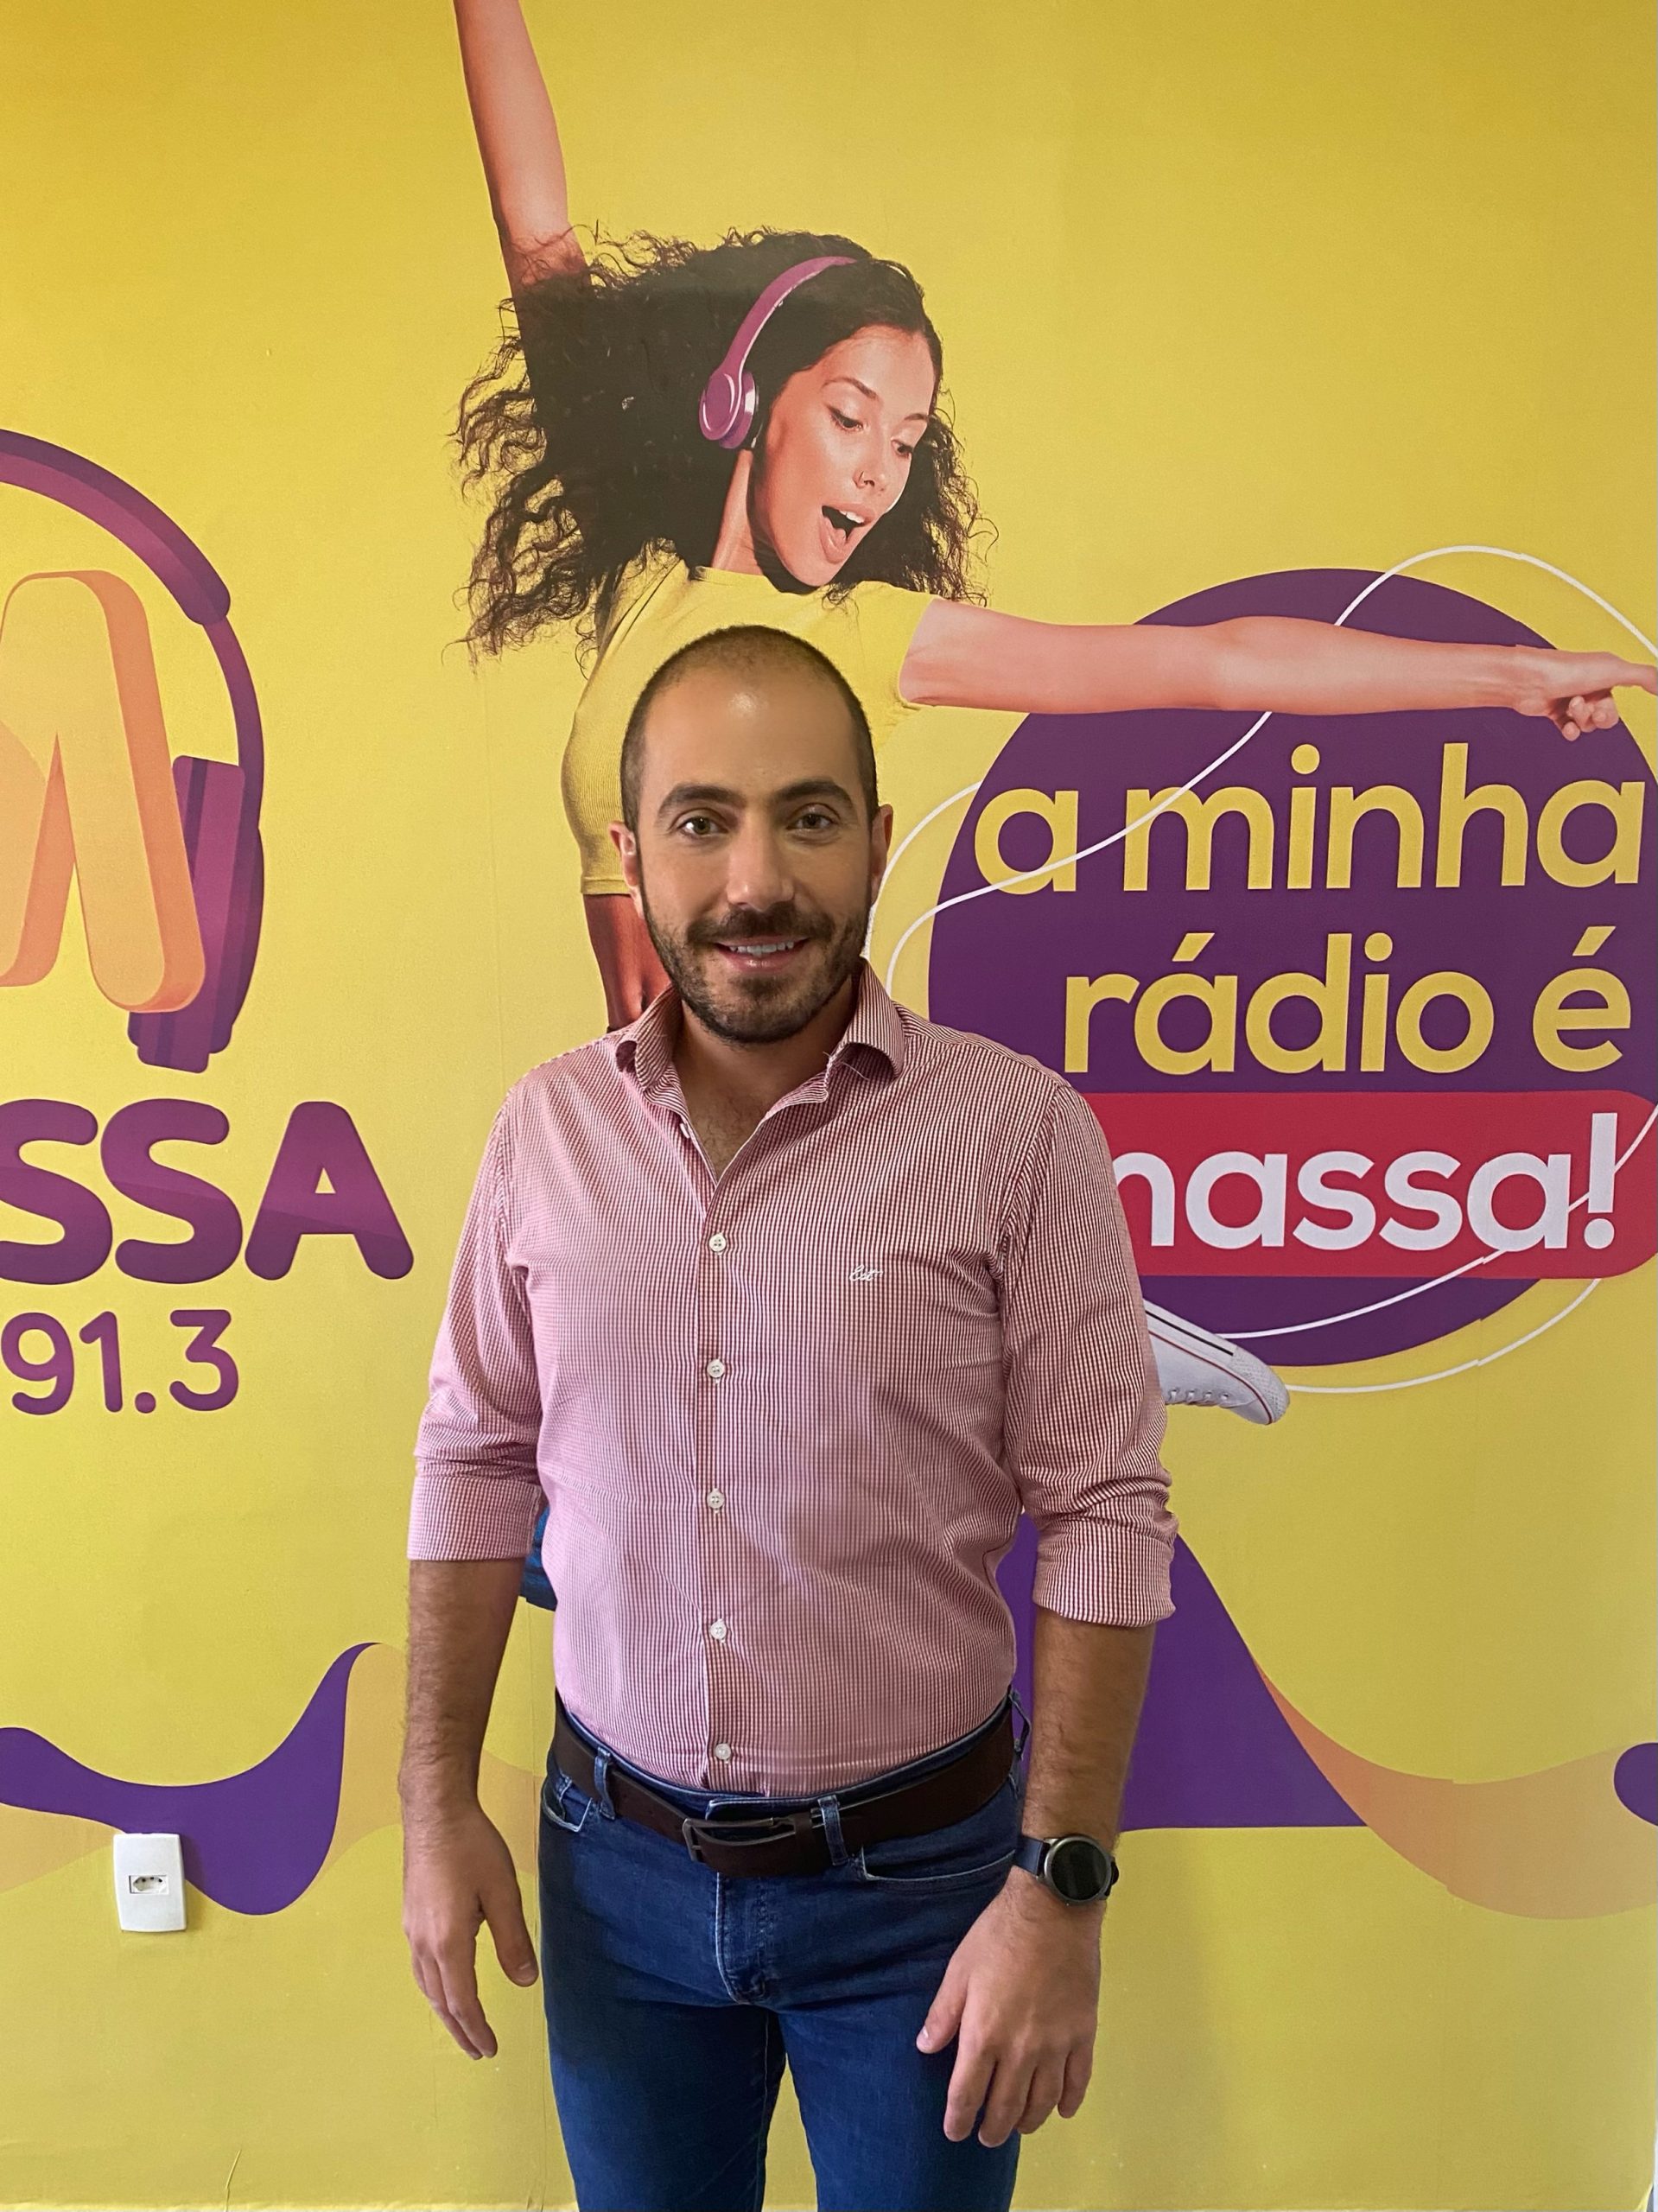 AGORA NA REGIÃO firma parceria de conteúdo com a Massa FM 91.3